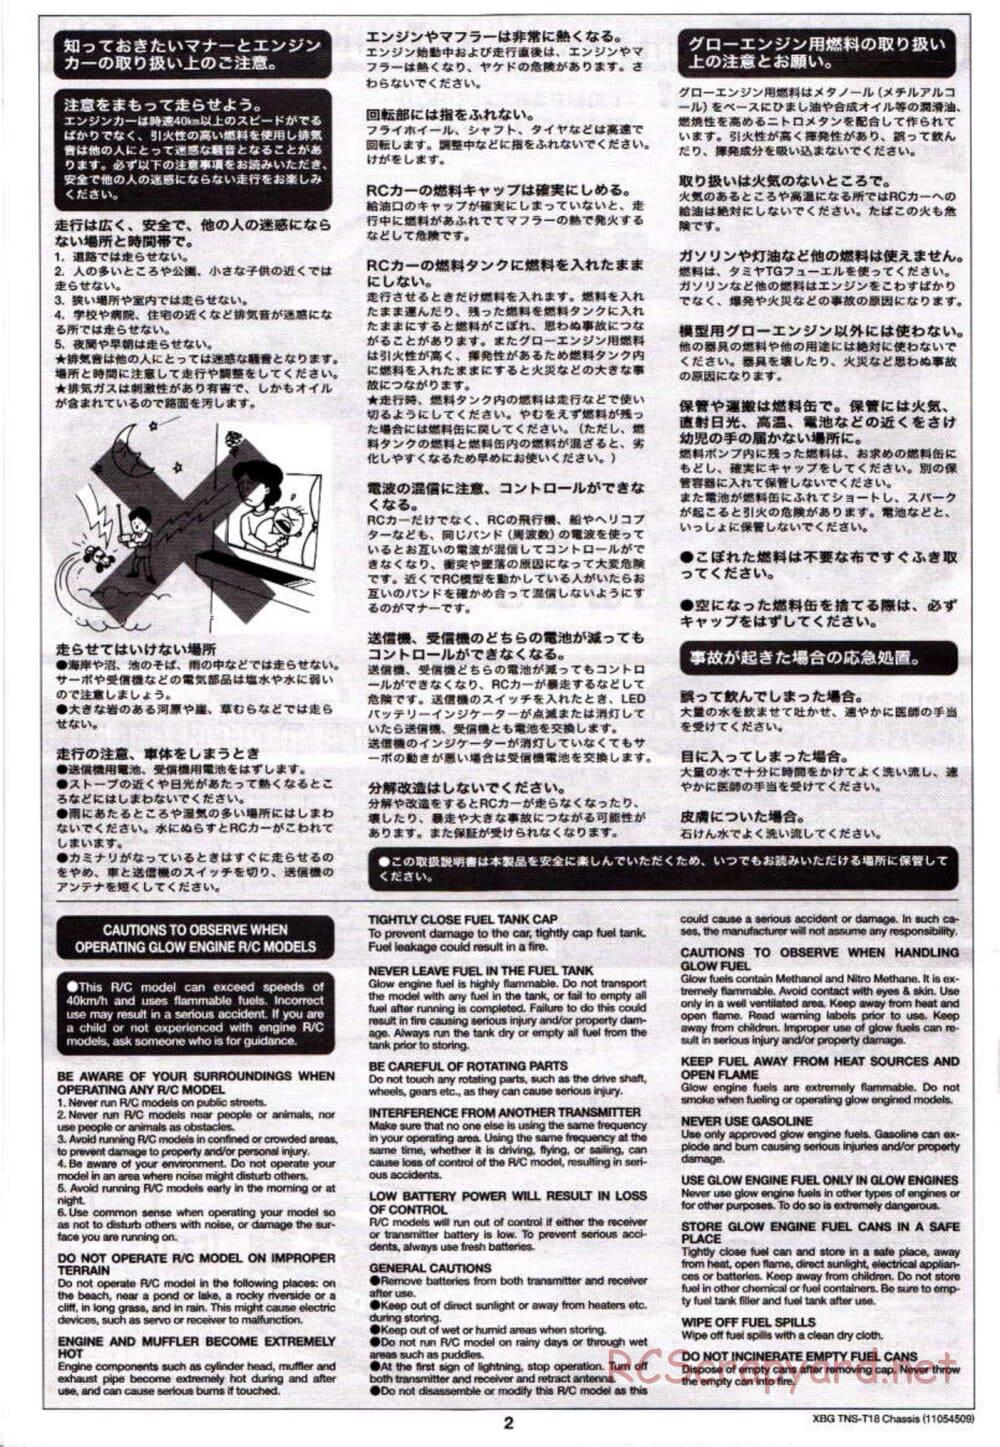 Tamiya - TNS-T18 Chassis - Manual - Page 2